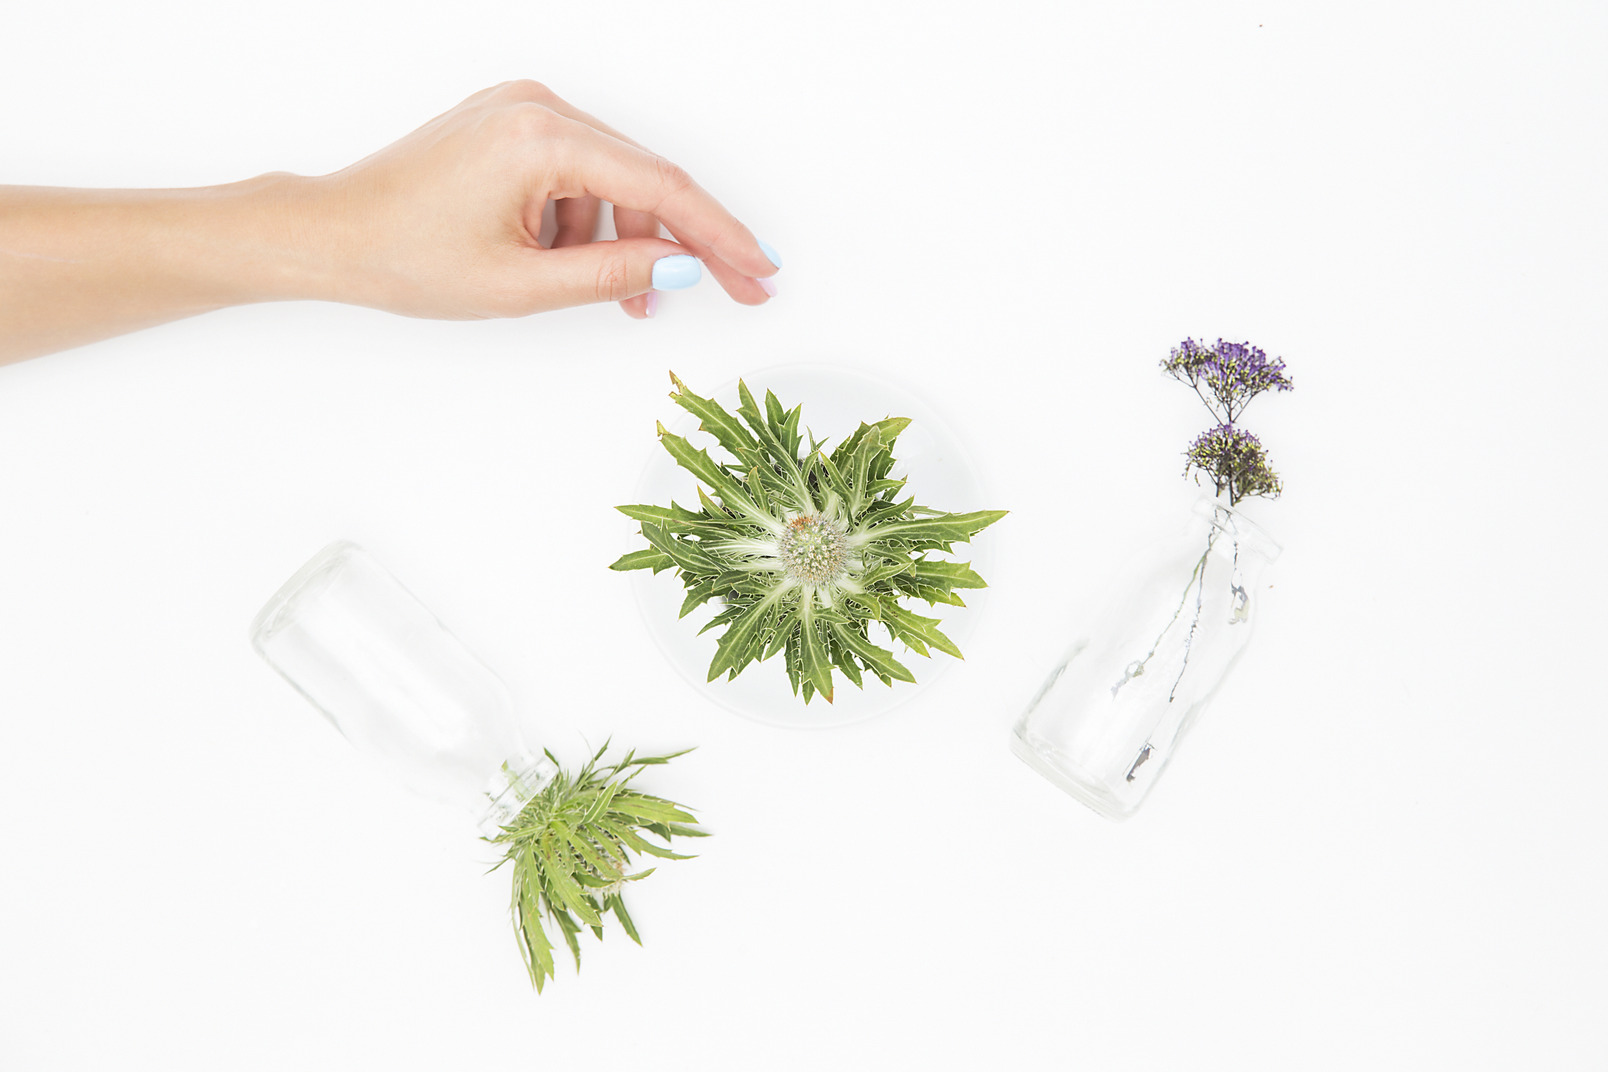 Green plants in glass bottles